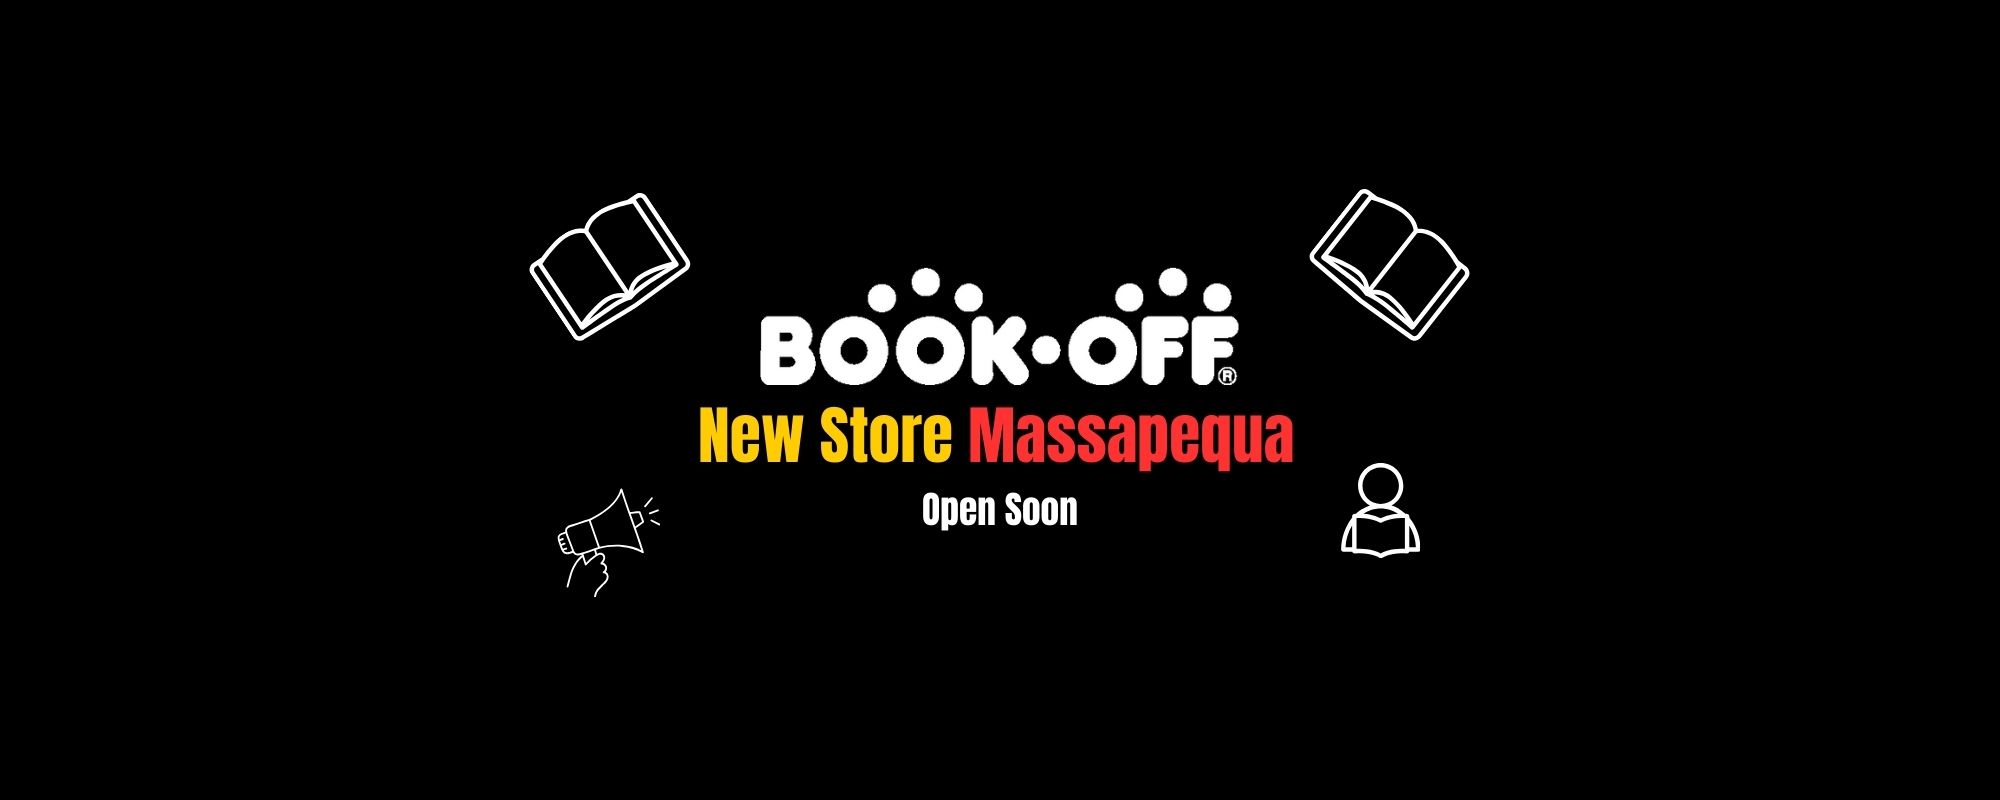 New Store Massapequa